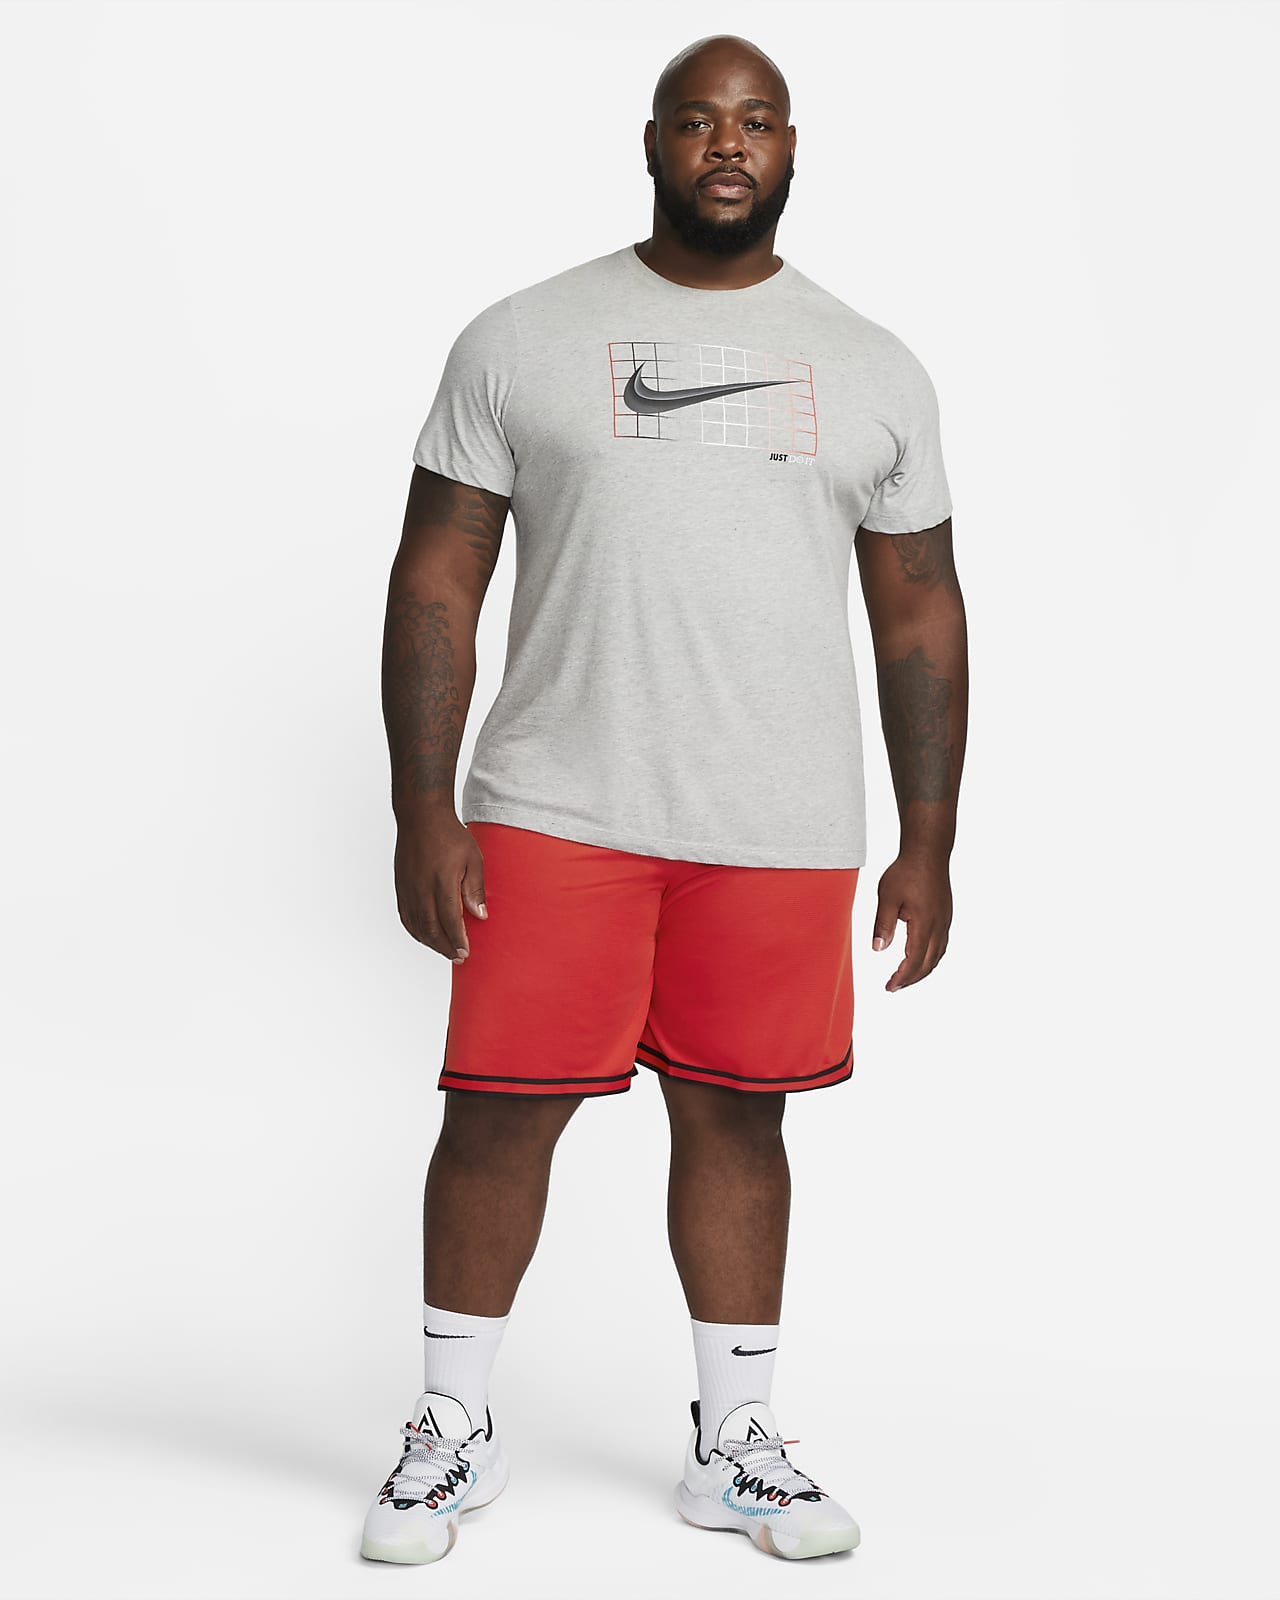 Men's Nike Chicago Bulls DNA Basketball Shorts